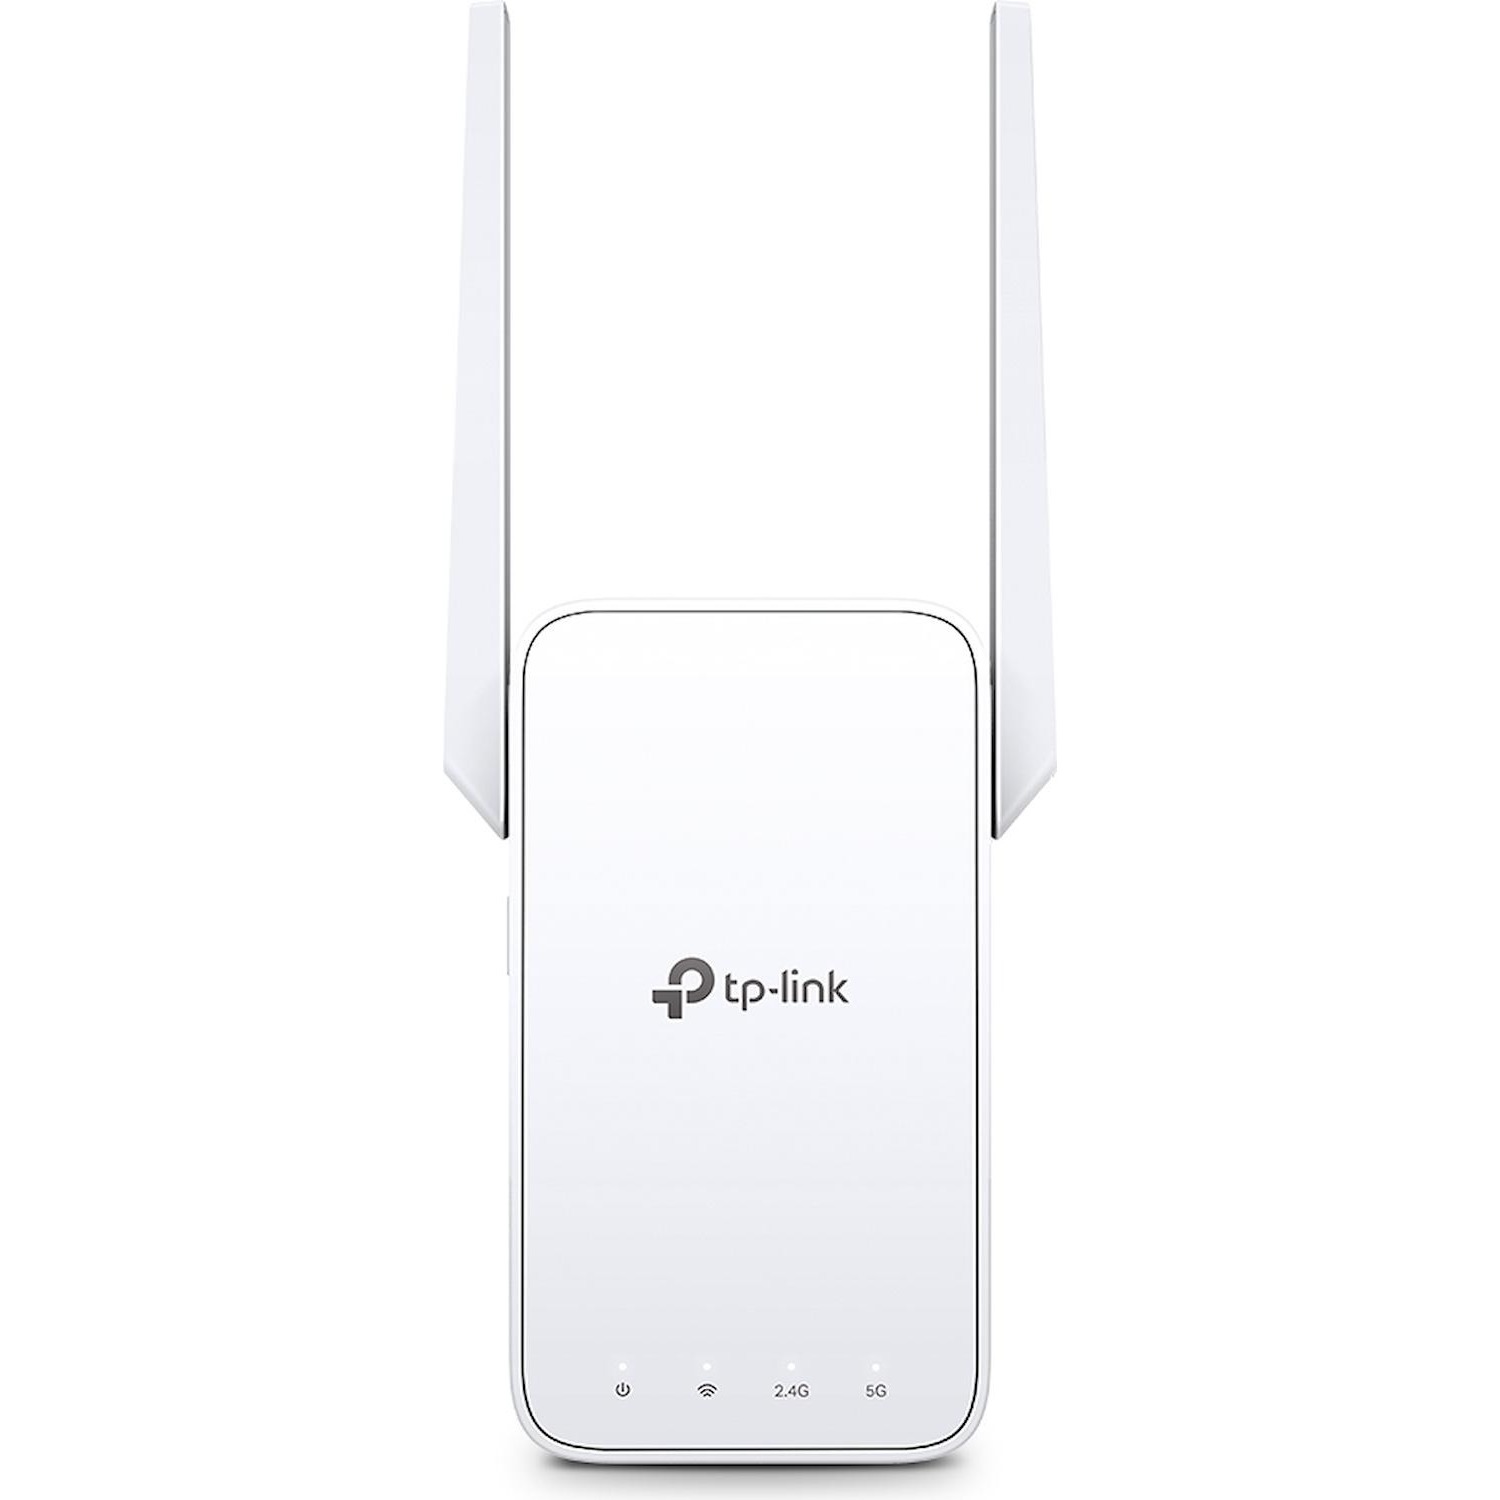 Immagine per TP-Link extender Wi-Fi AC1200 OneMesh da DIMOStore